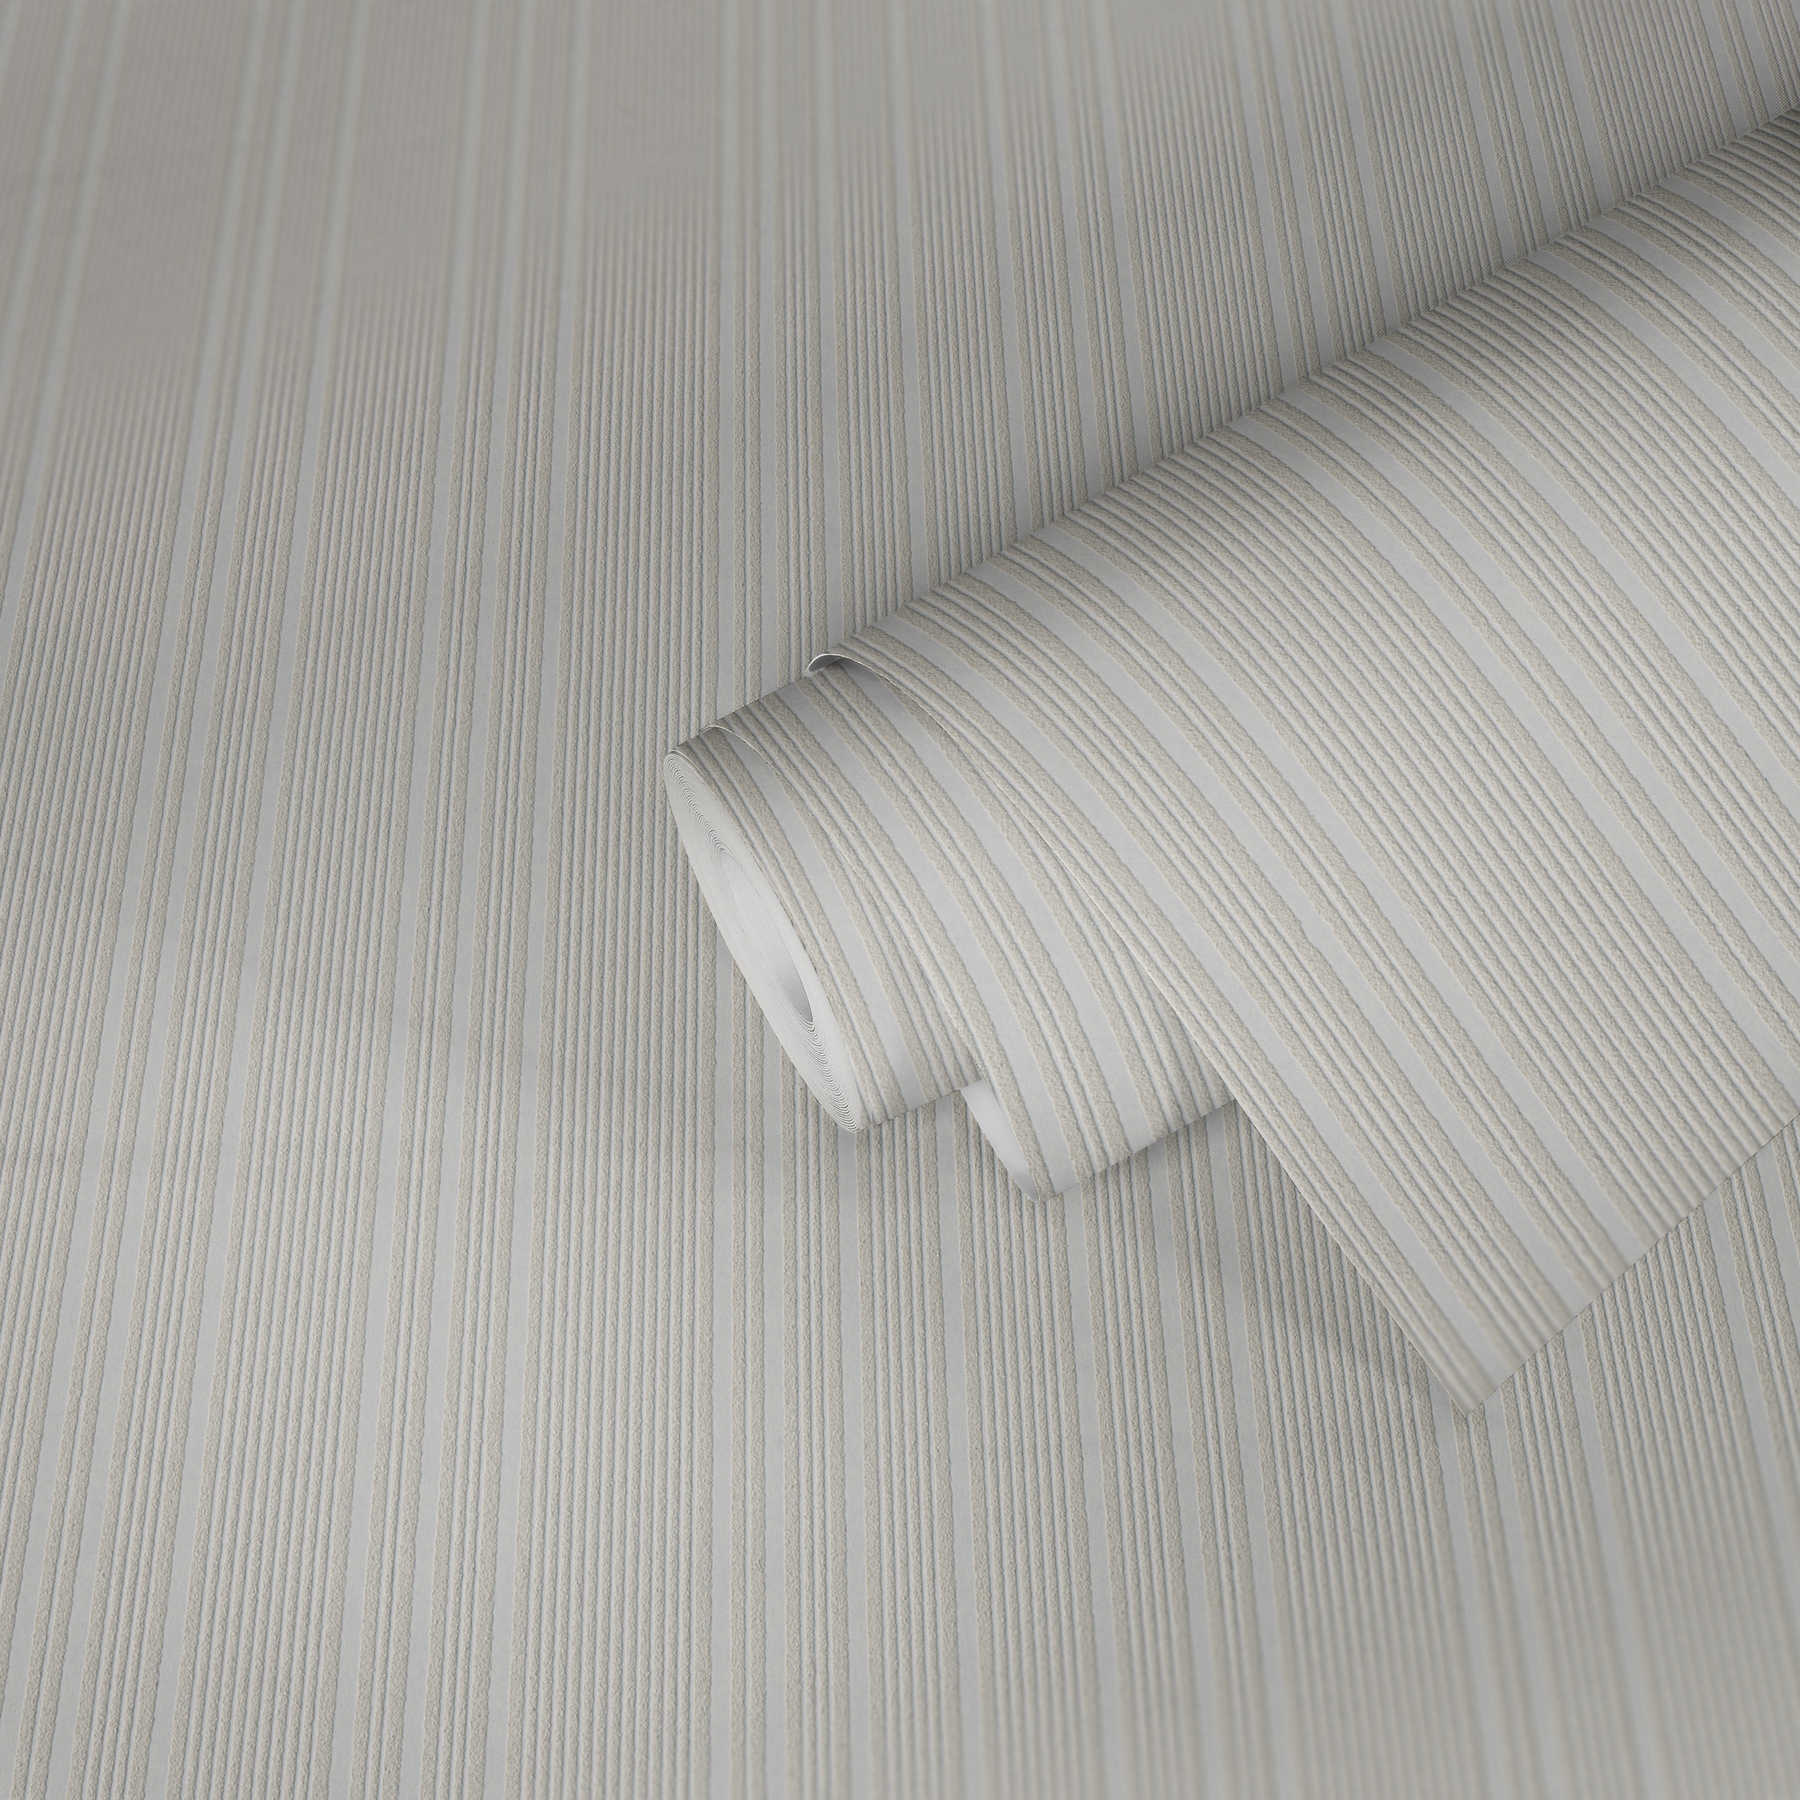             Overschilderbaar vliesbehang met lijnenpatroon - wit
        